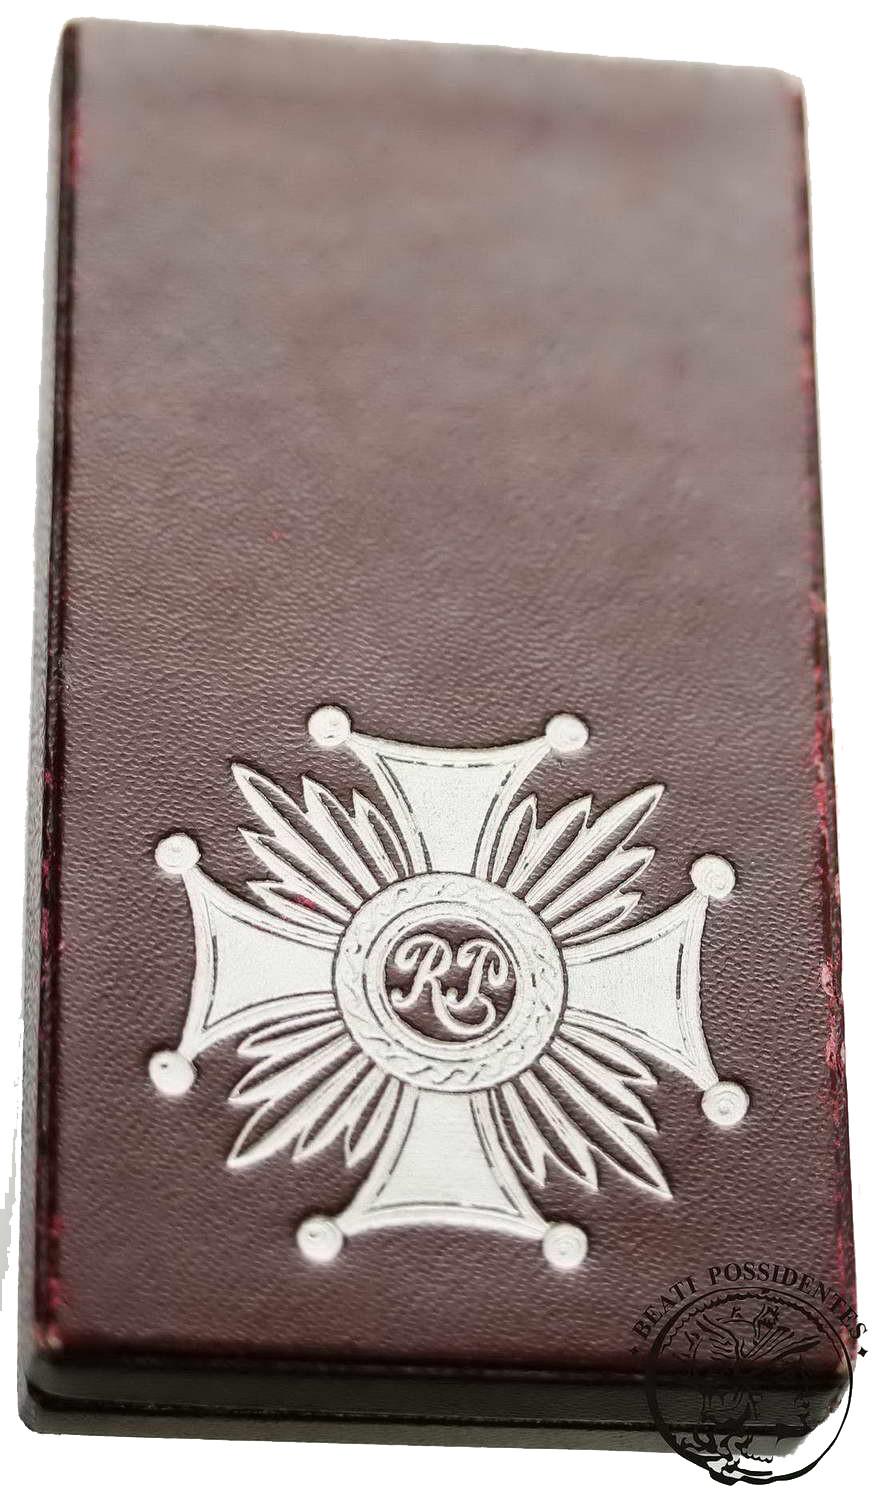 Polska II RP Srebrny Krzyż Zasługi